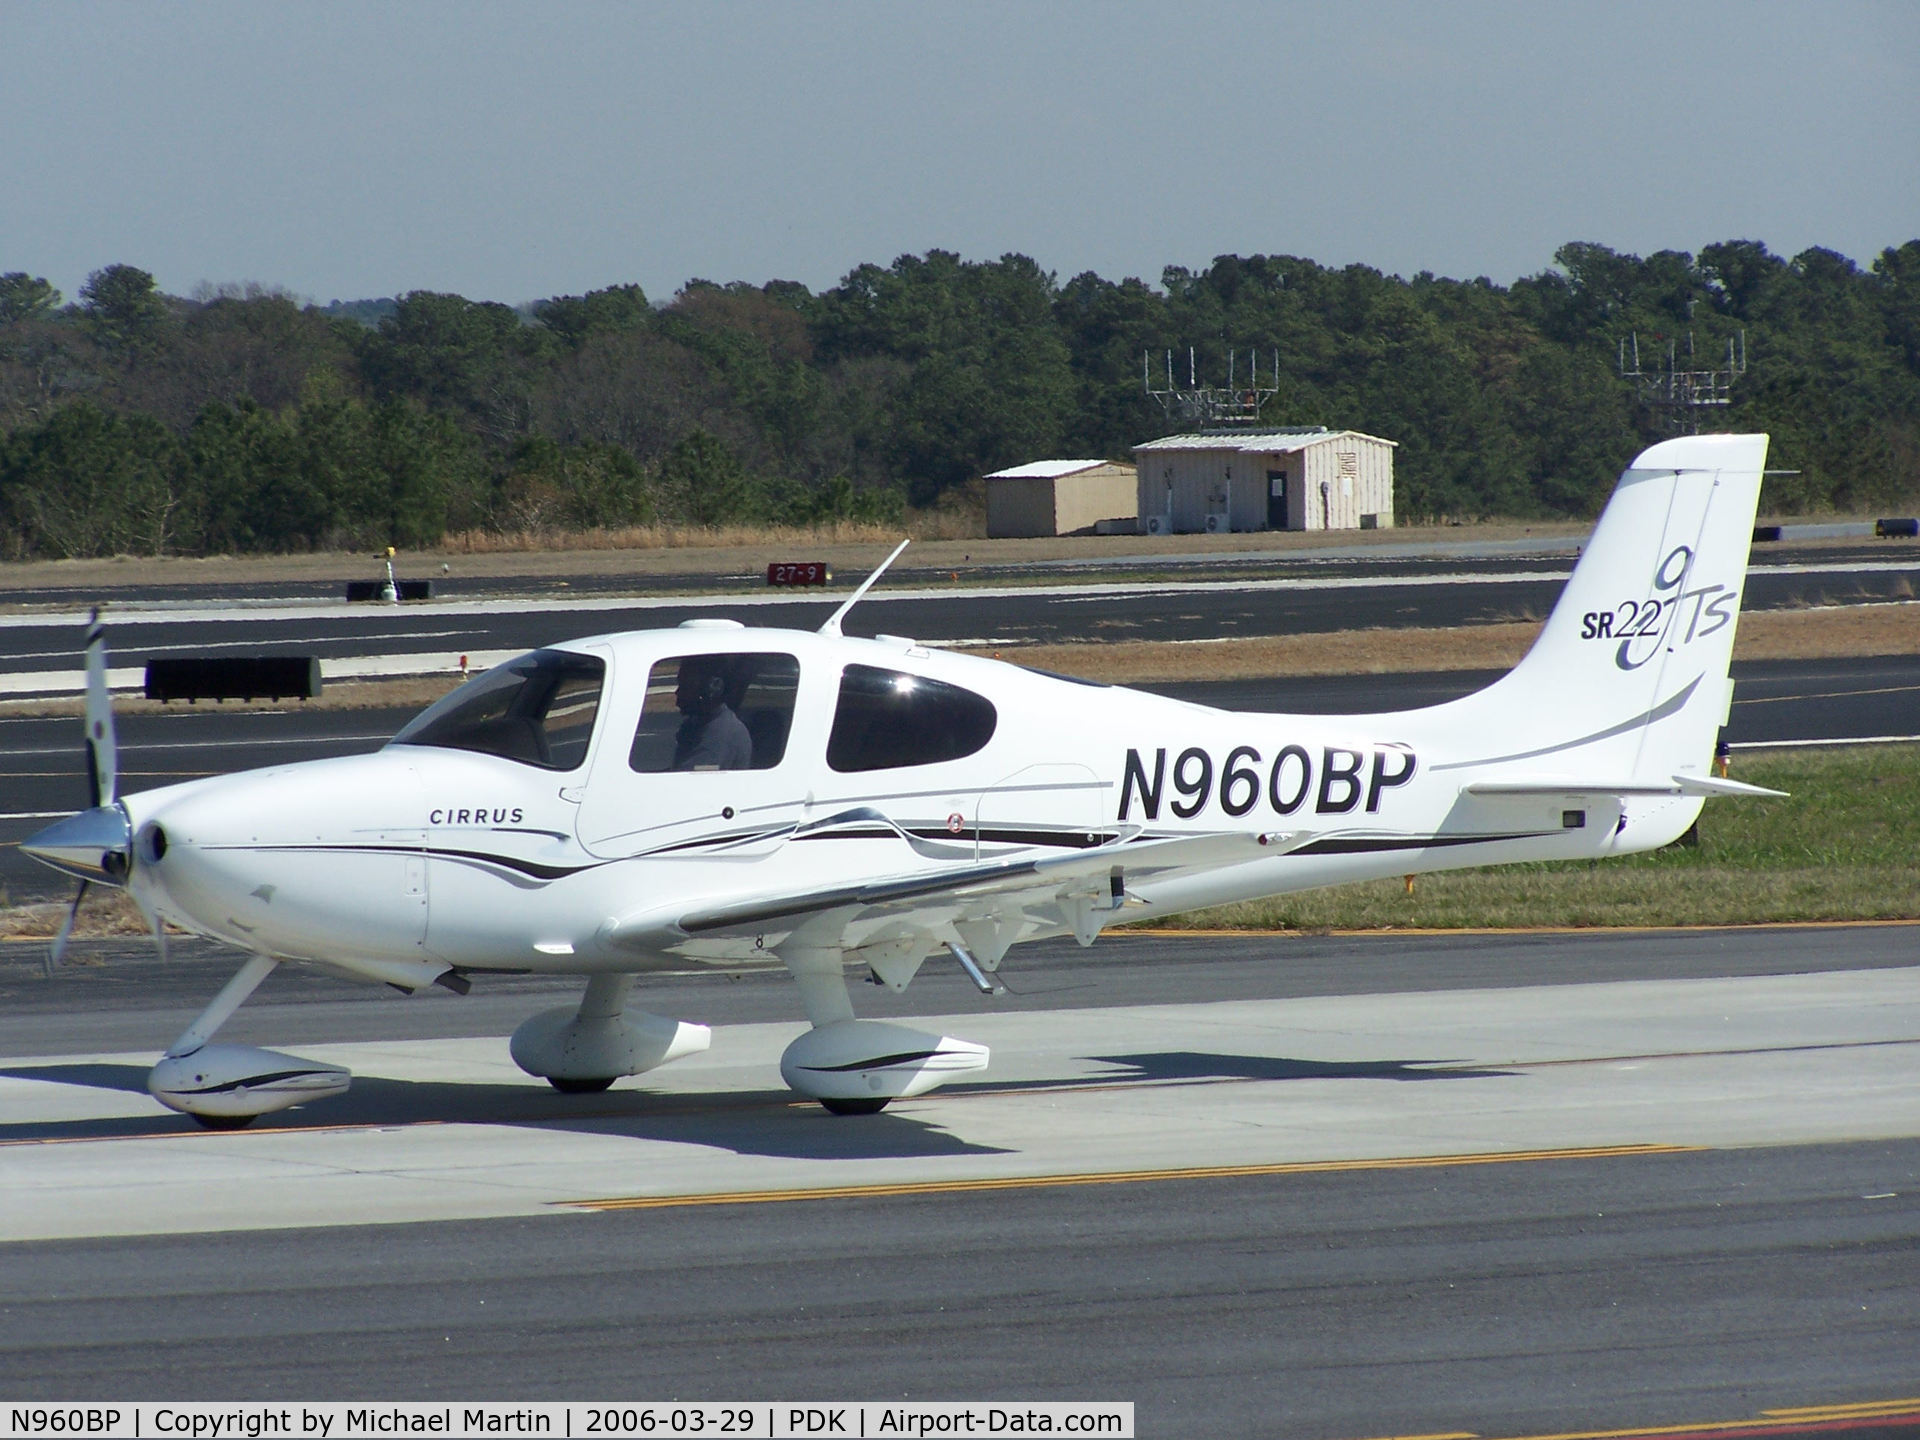 N960BP, 2004 Cirrus SR22 GTS C/N 1110, Taxing back from flight